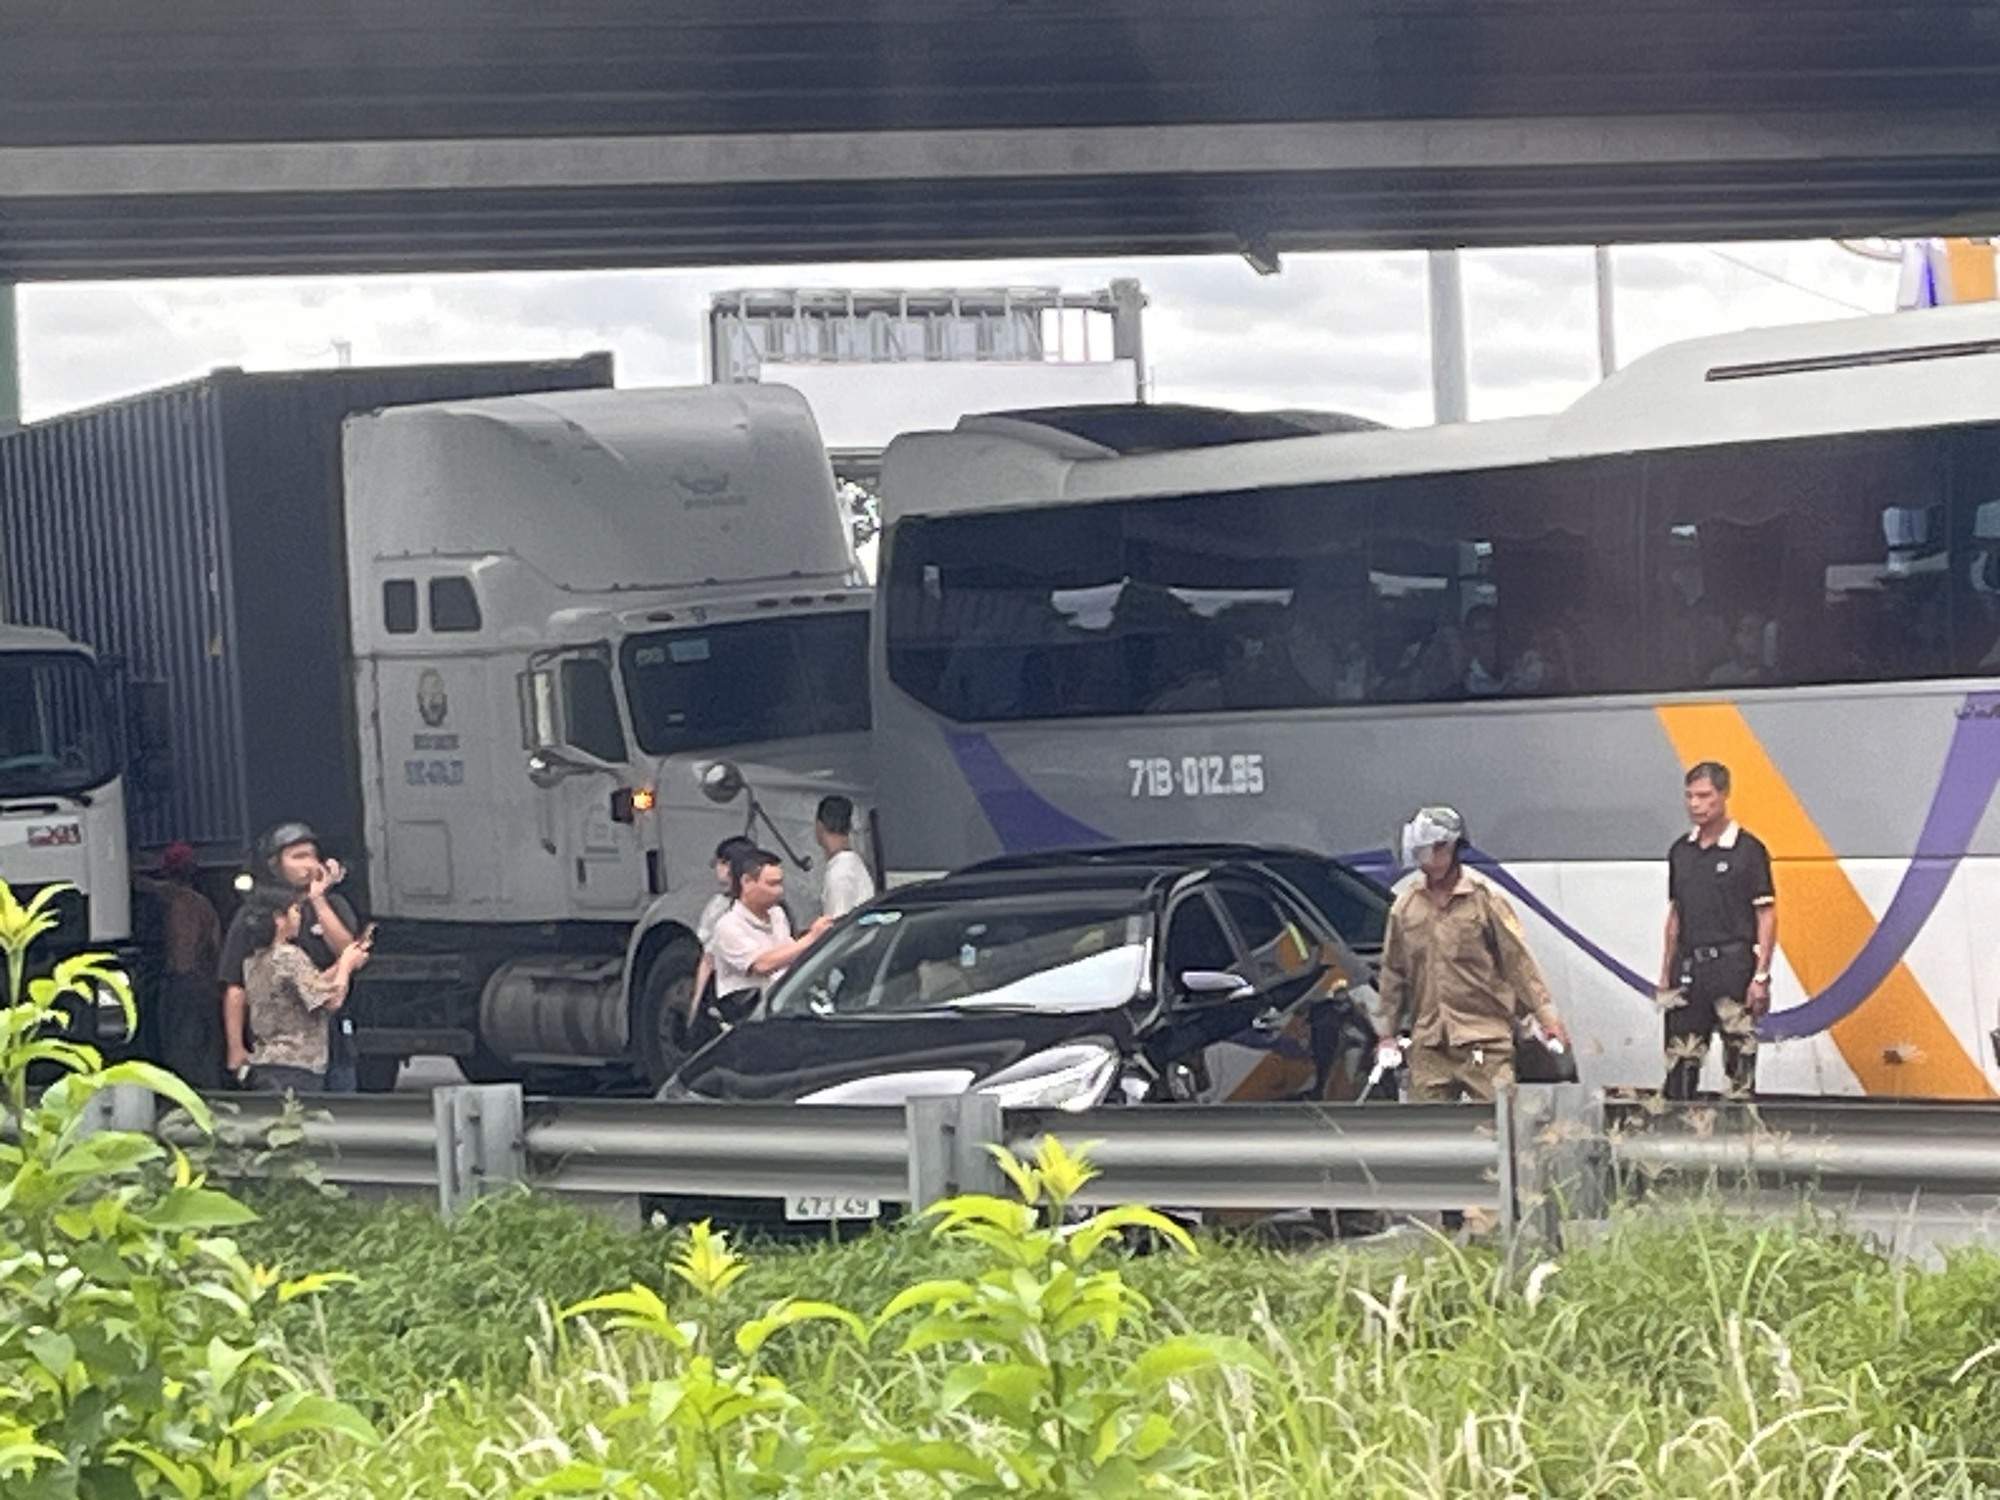 Cao tốc TP.HCM - Long Thành - Dầu Giây và QL51 ùn tắc kéo dài sau tai nạn- Ảnh 1.